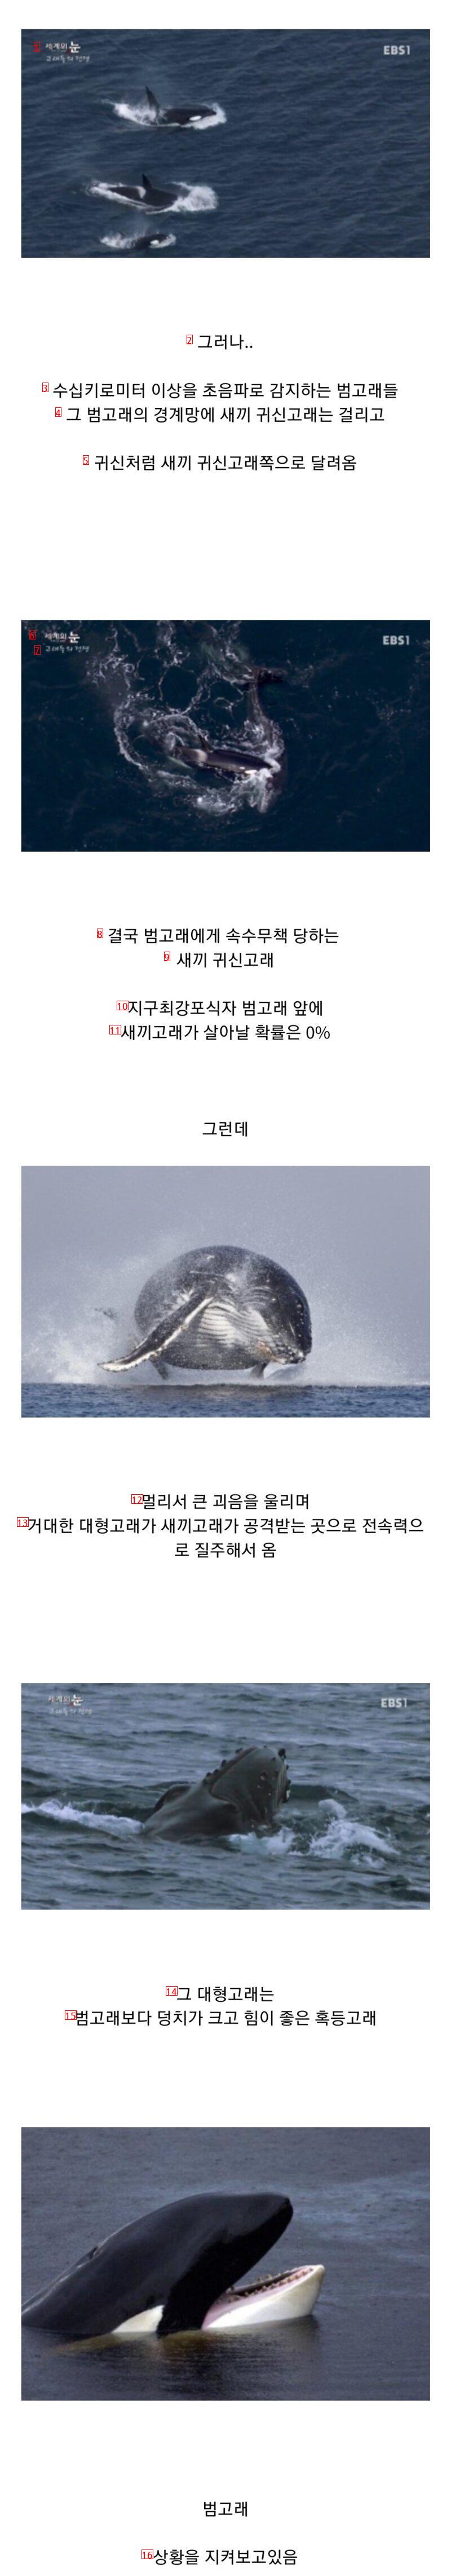 범고래 담당 일진